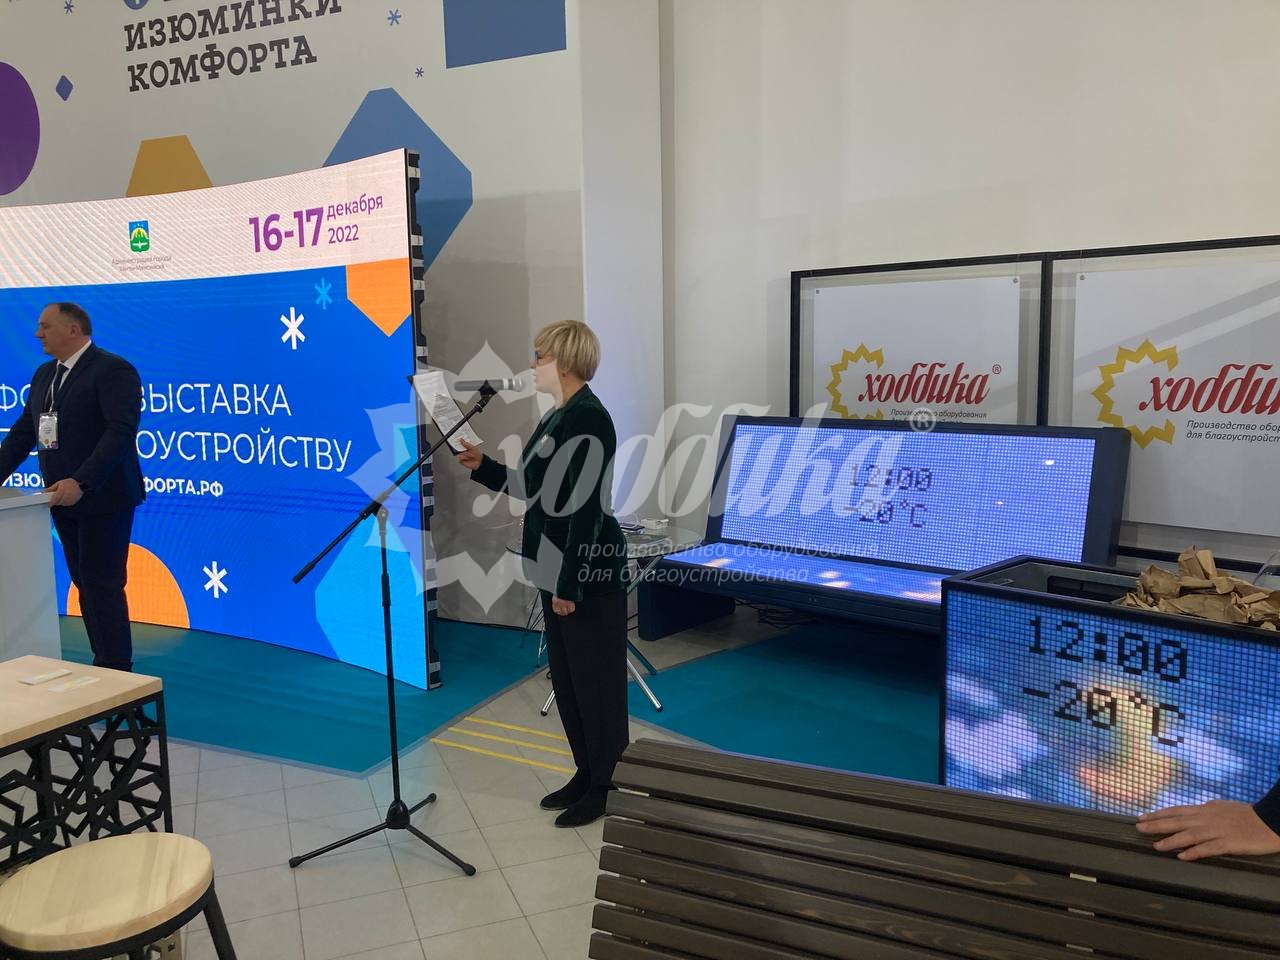 Форум-выставка «Изюминки комфорта» в Ханты-Мансийске с участием Хоббики - 9